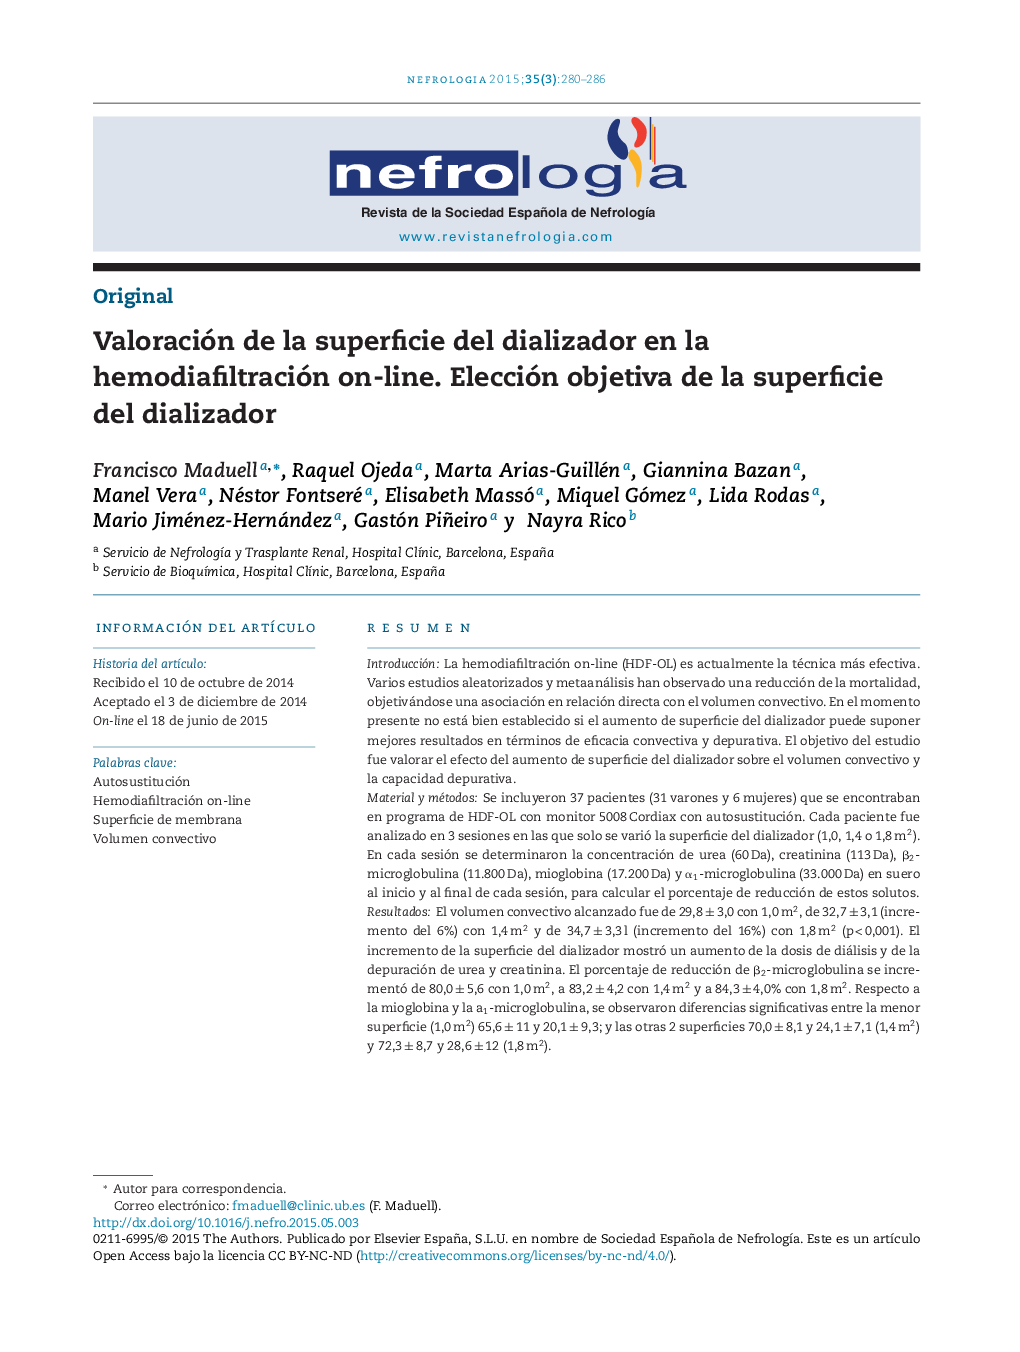 Valoración de la superficie del dializador en la hemodiafiltración on-line. Elección objetiva de la superficie del dializador